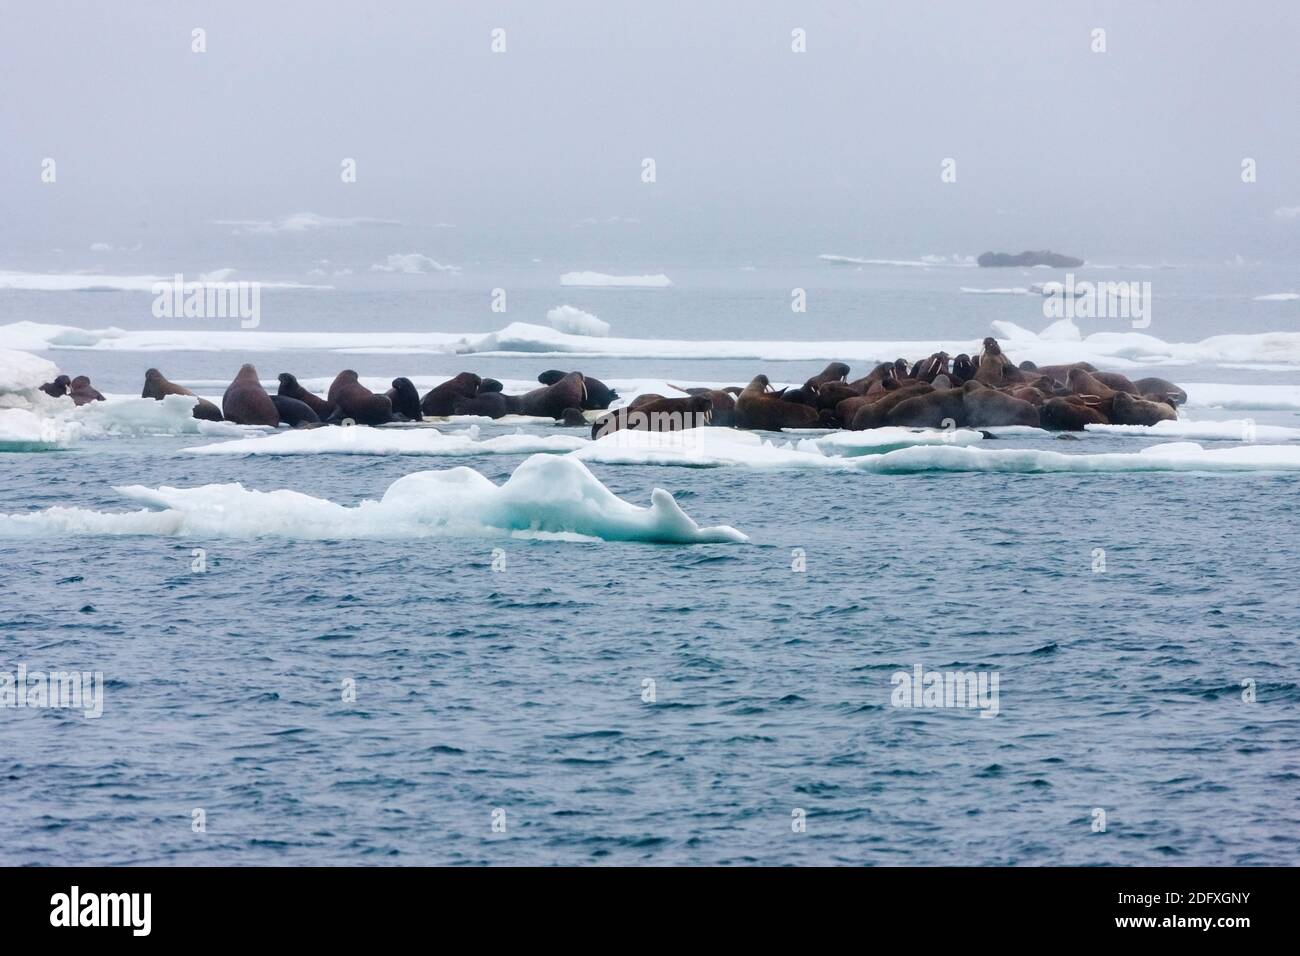 Les morses sur la glace flottante, mer de Tchoukotka, en Russie extrême-orient Banque D'Images